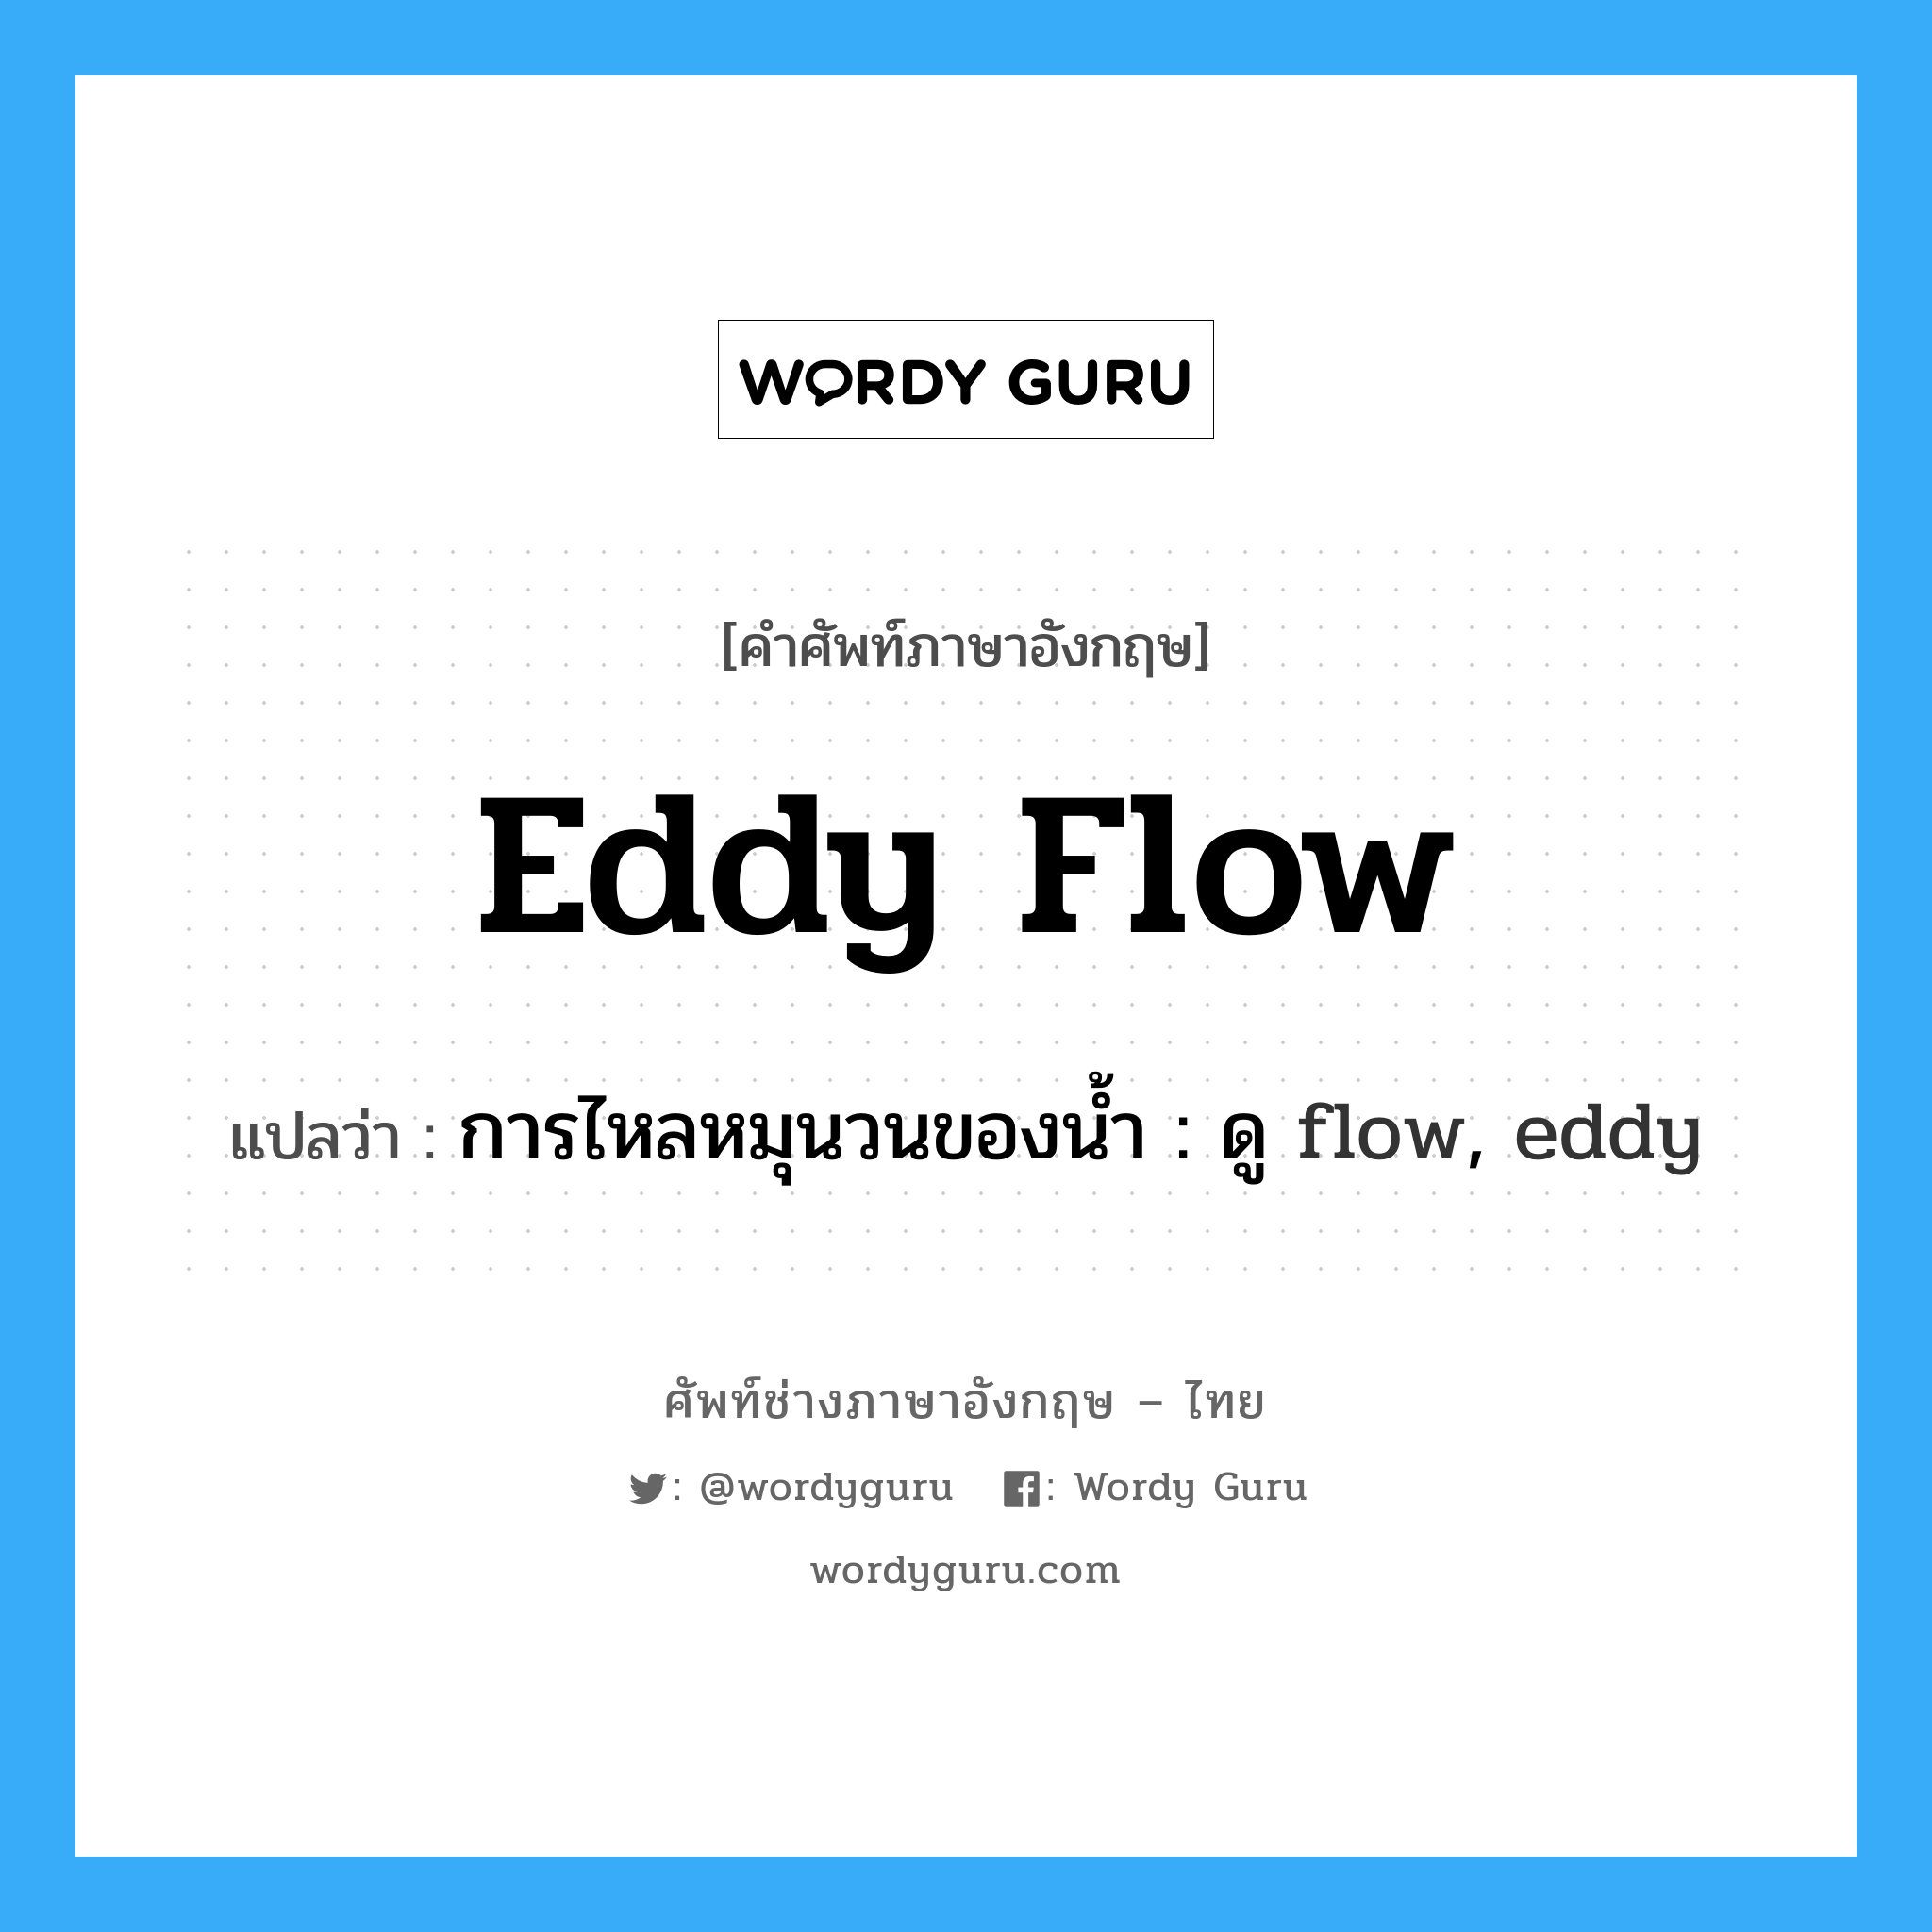 การไหลหมุนวนของน้ำ : ดู flow, eddy ภาษาอังกฤษ?, คำศัพท์ช่างภาษาอังกฤษ - ไทย การไหลหมุนวนของน้ำ : ดู flow, eddy คำศัพท์ภาษาอังกฤษ การไหลหมุนวนของน้ำ : ดู flow, eddy แปลว่า eddy flow